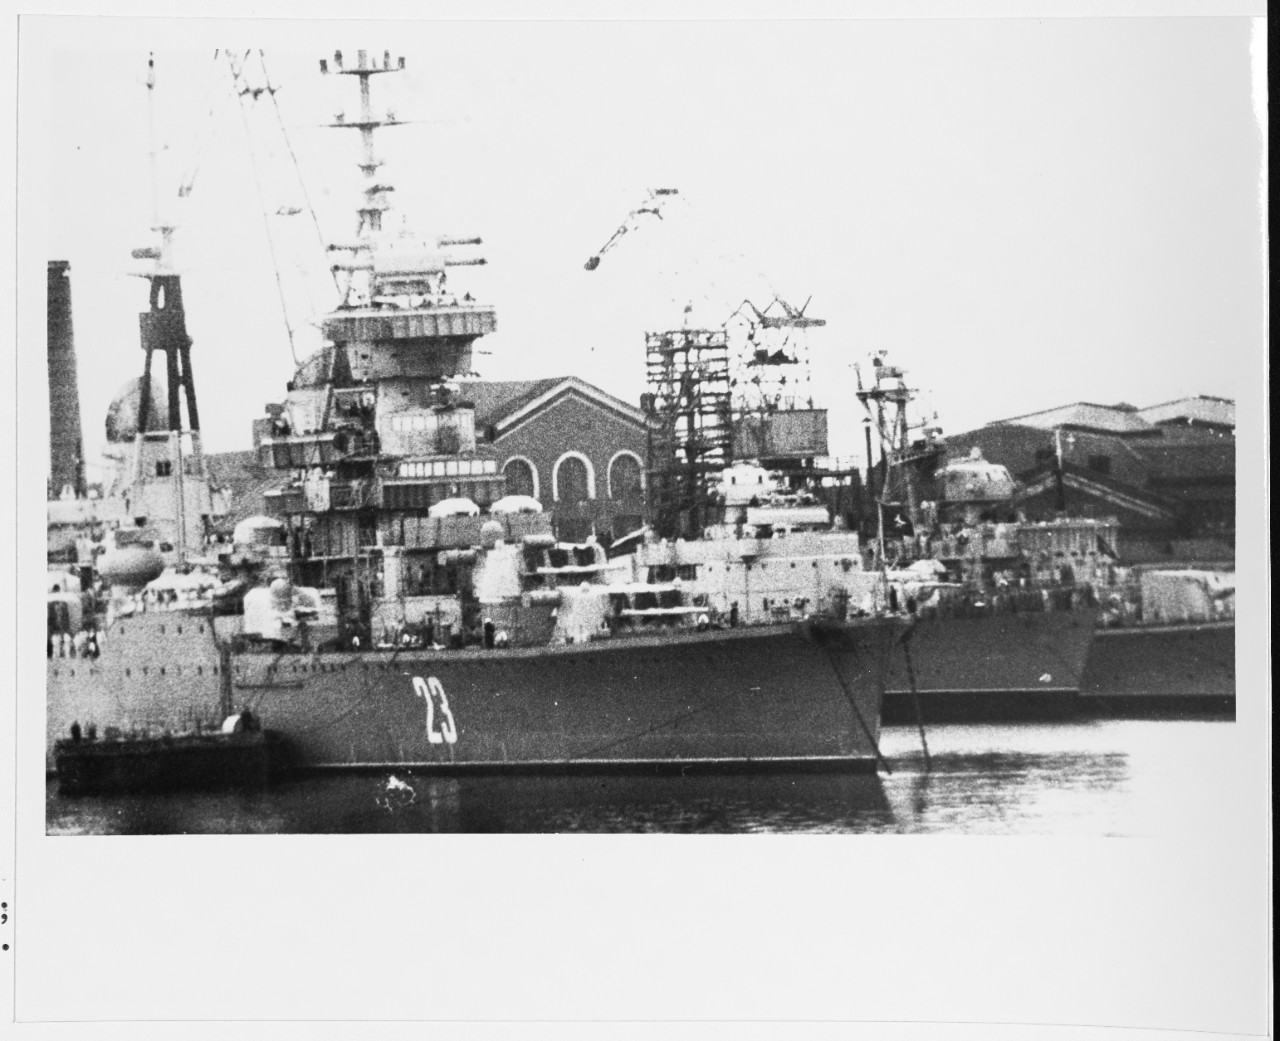 Soviet SVERDLOV Class Cruiser, Pennant 23